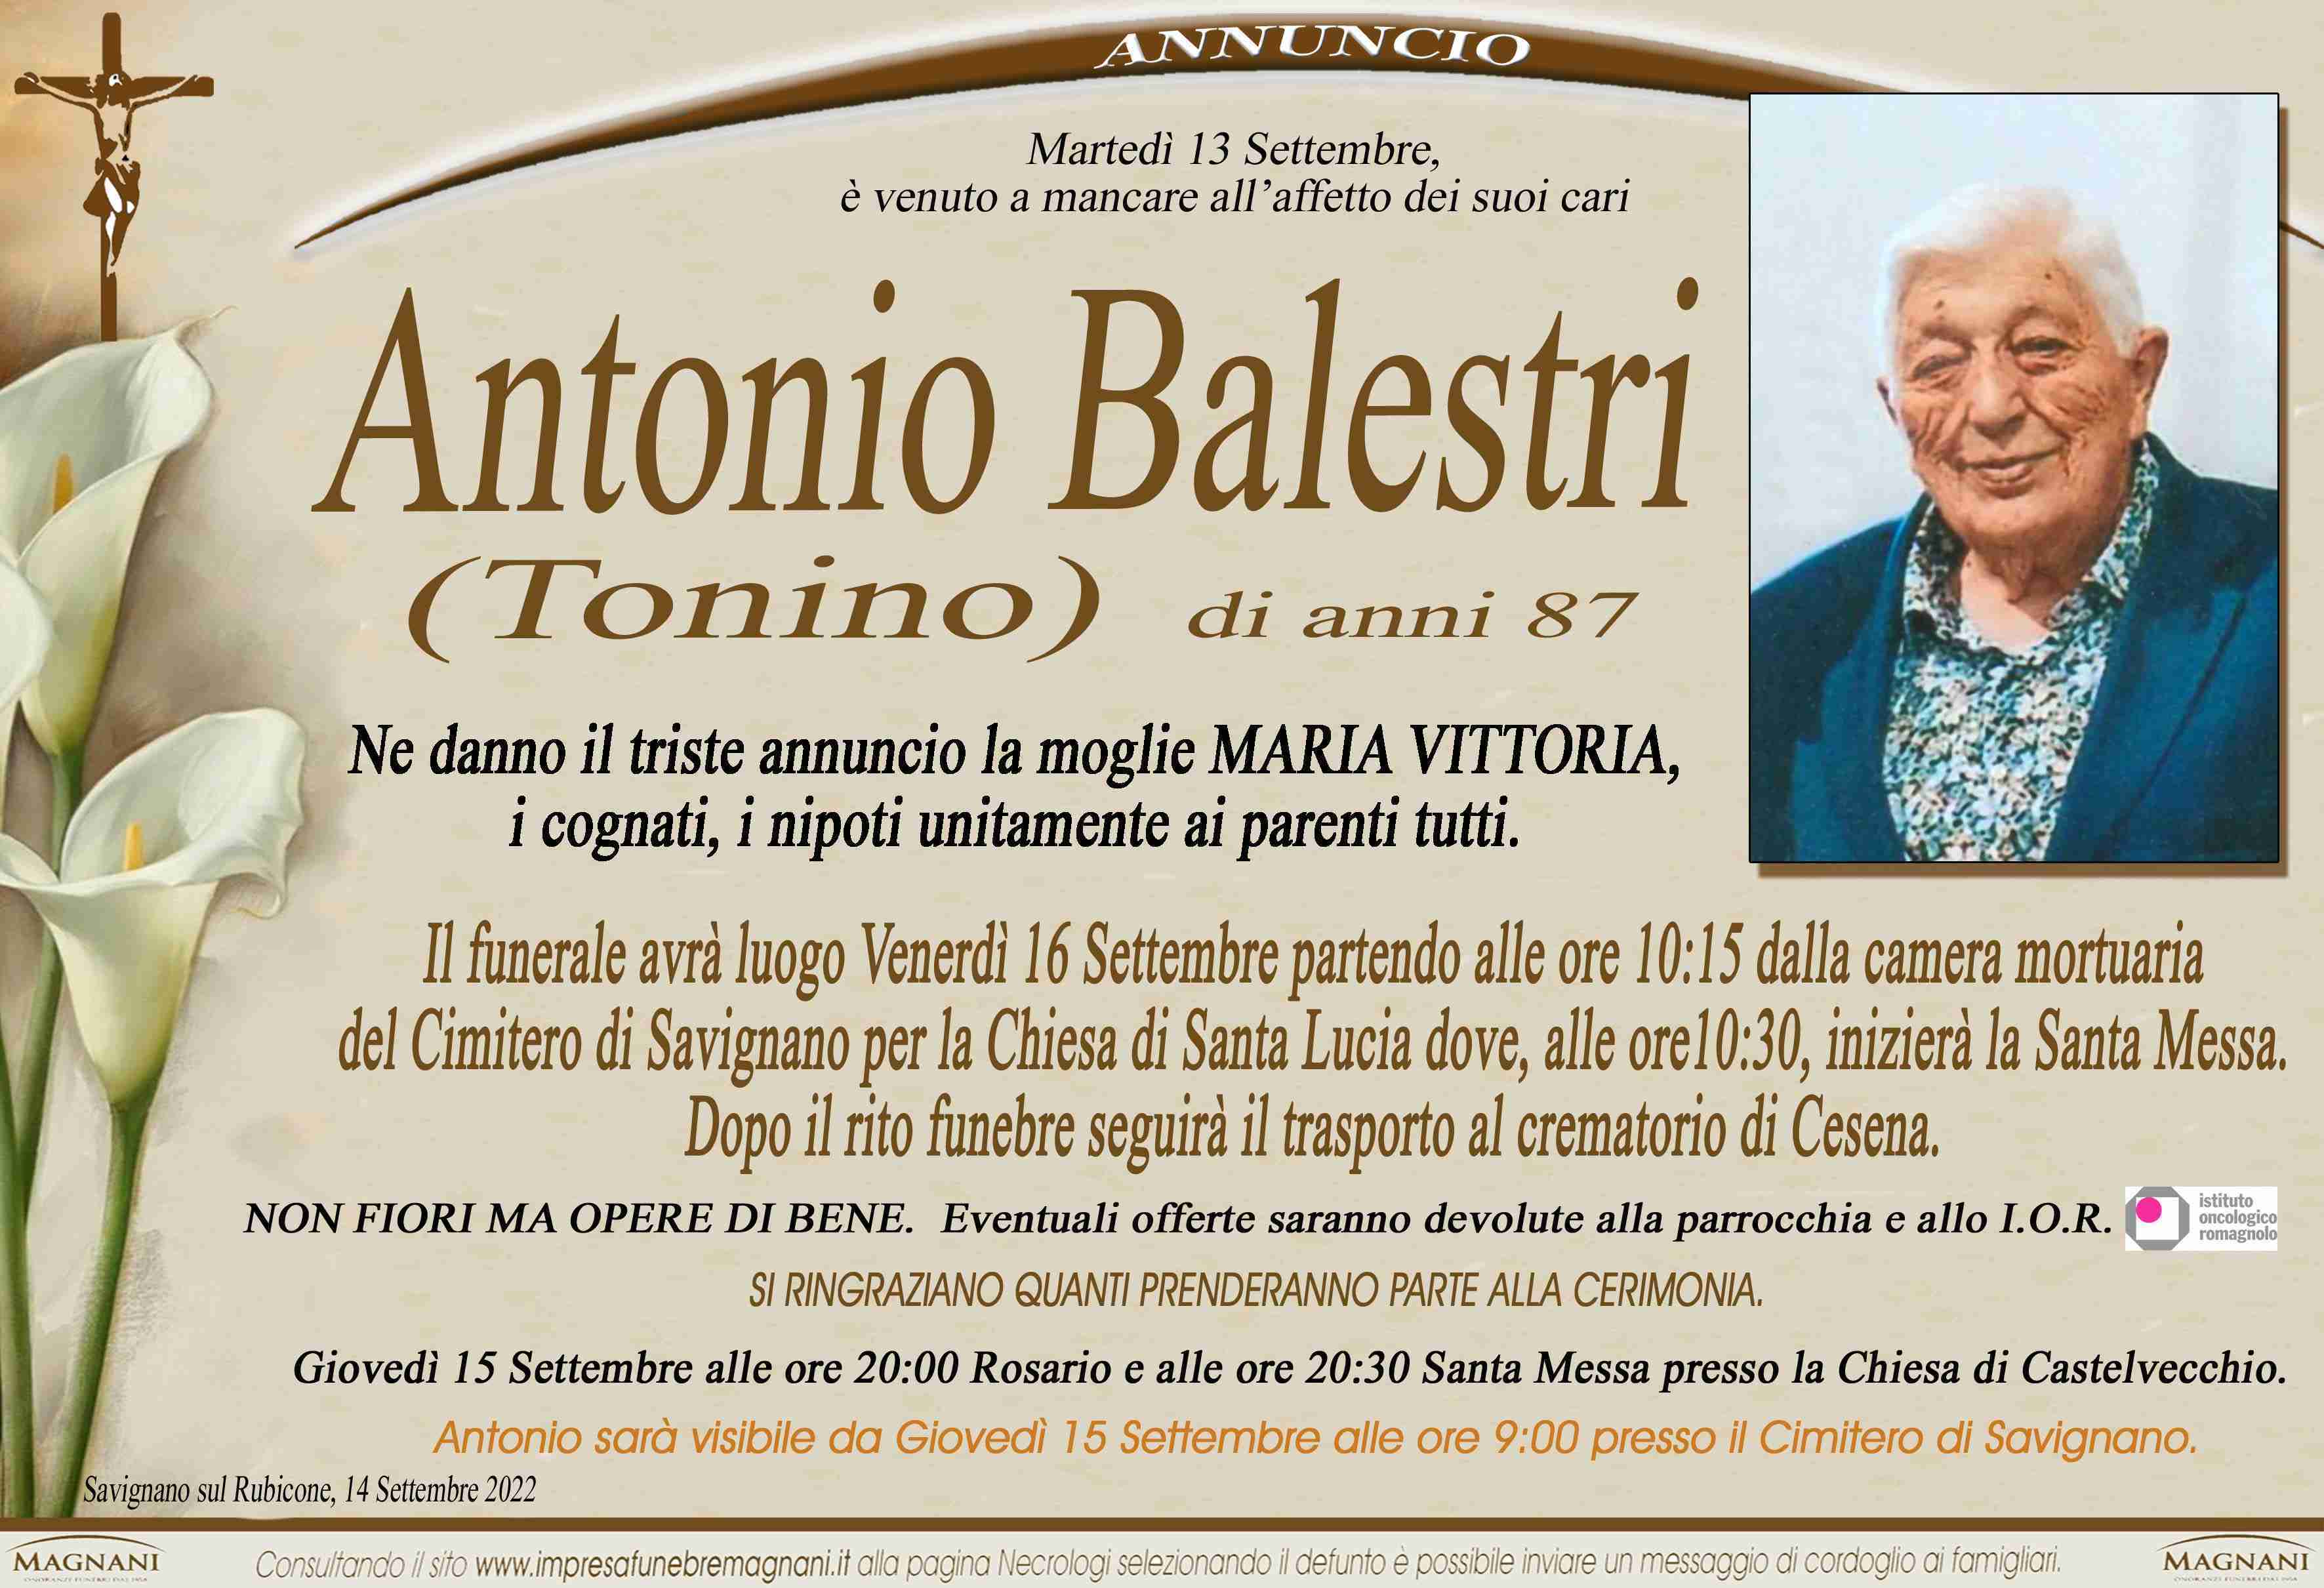 Antonio Balestri